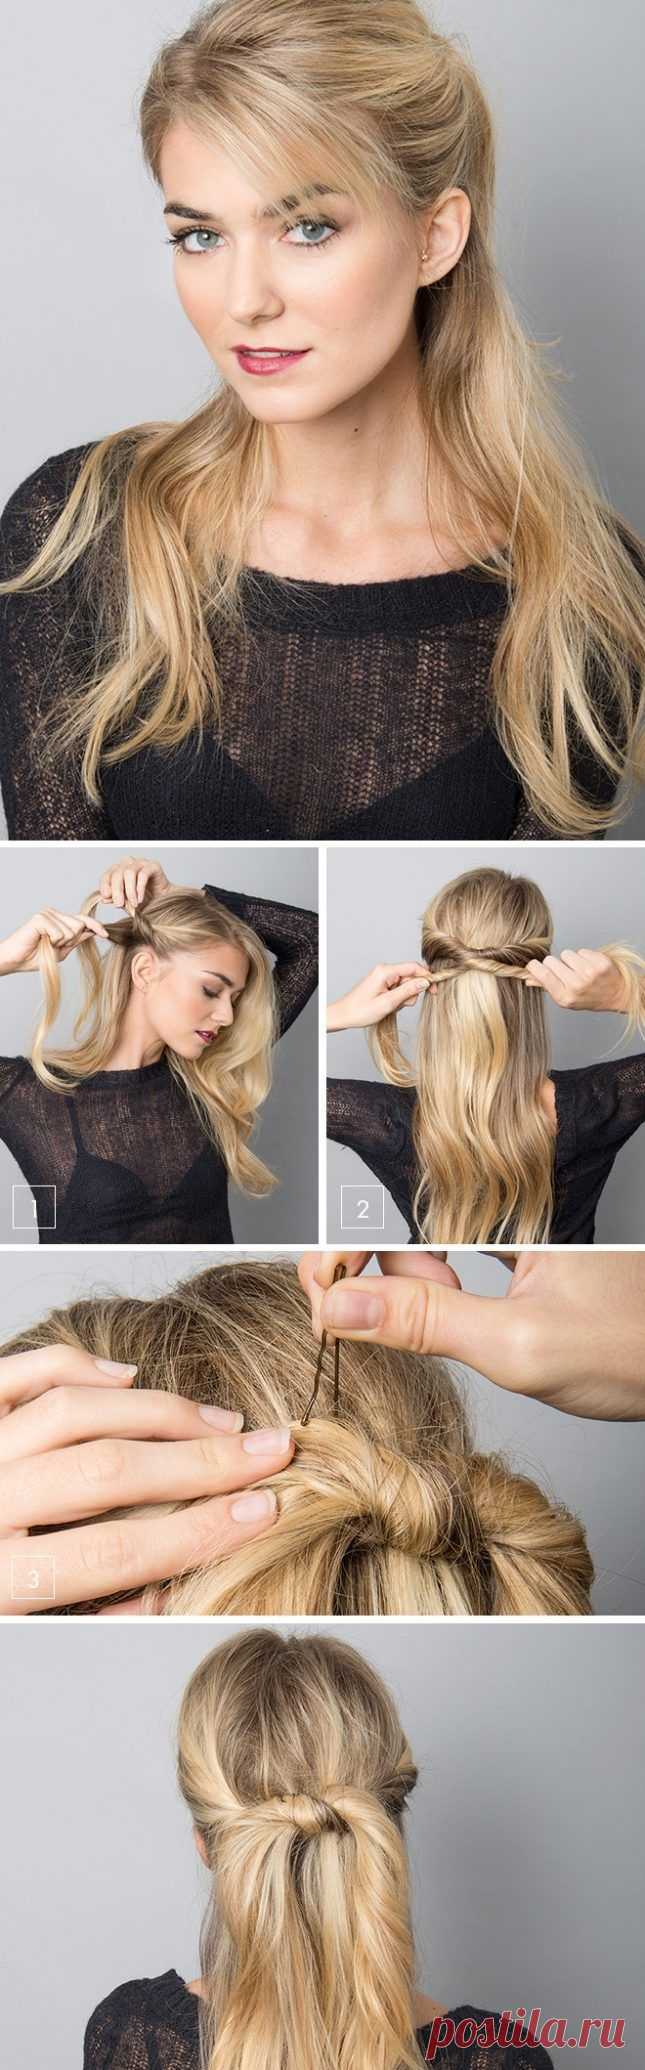 10 быстрых причесок для длинных волос / Все для женщины